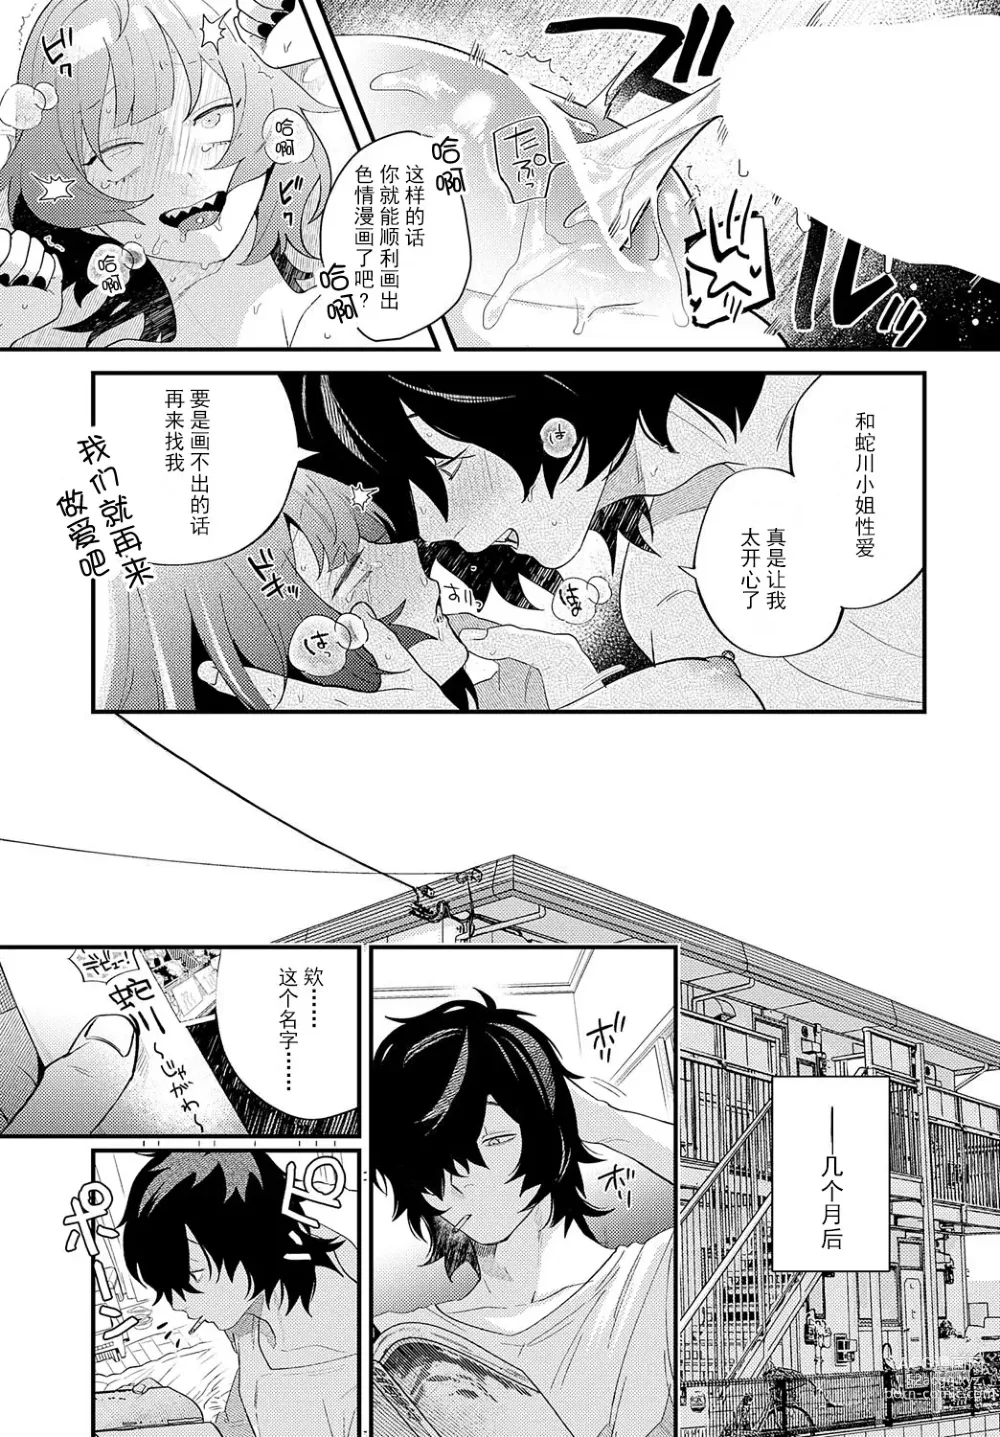 Page 25 of manga 蛇川小姐想让他勃起!